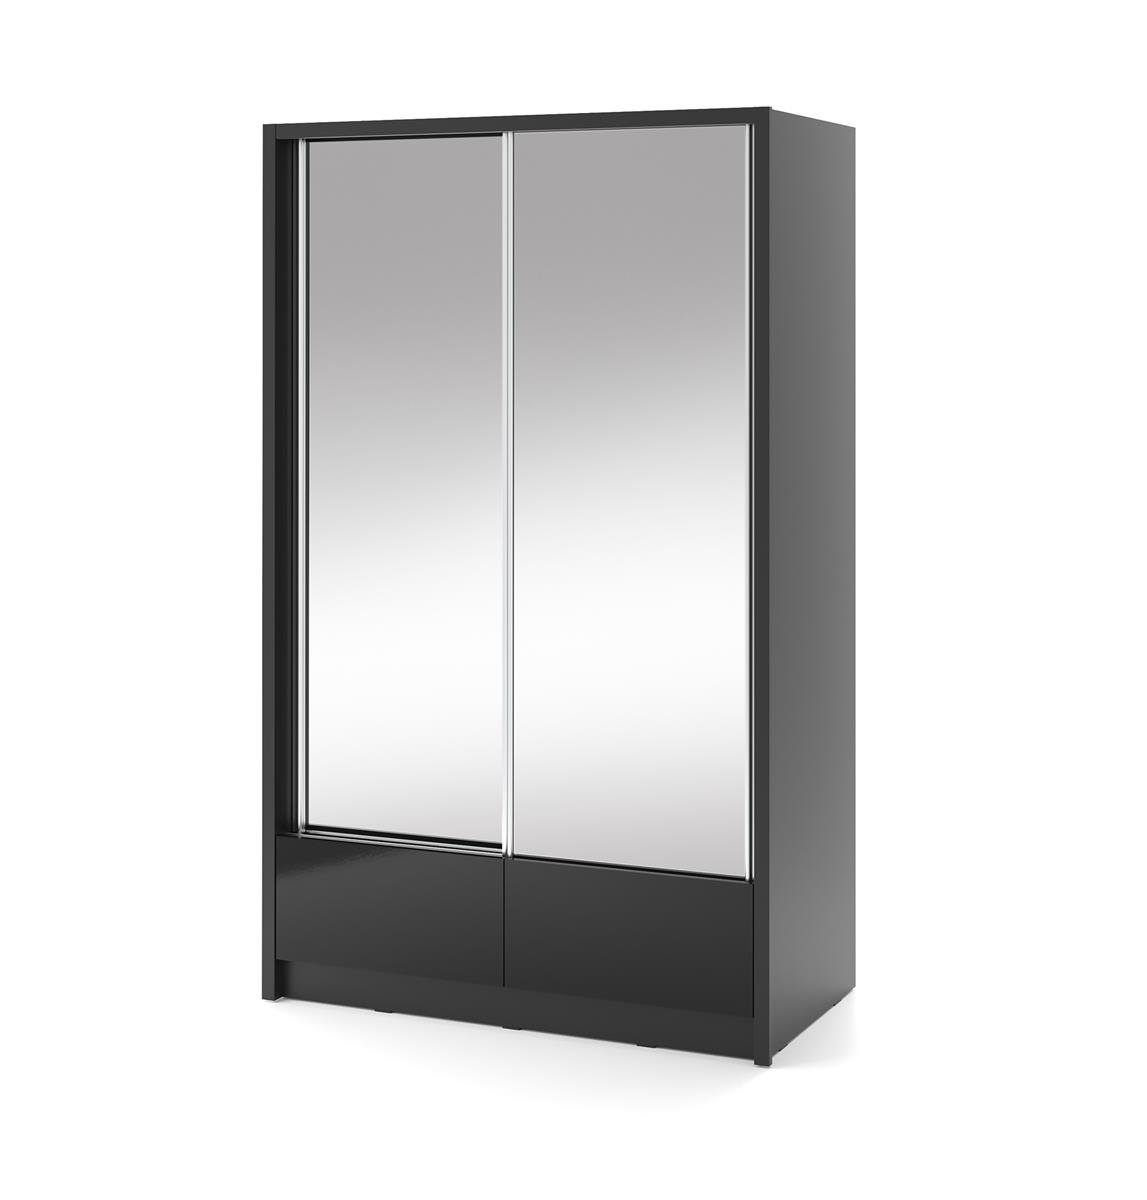 Beautysofa Spiegelschrank Lara Garderobe) schwarzes Kleiderschrank, Wohnzimmer (weißes 2x mit Spiegelnd, für Schrank oder Schiebtüren II